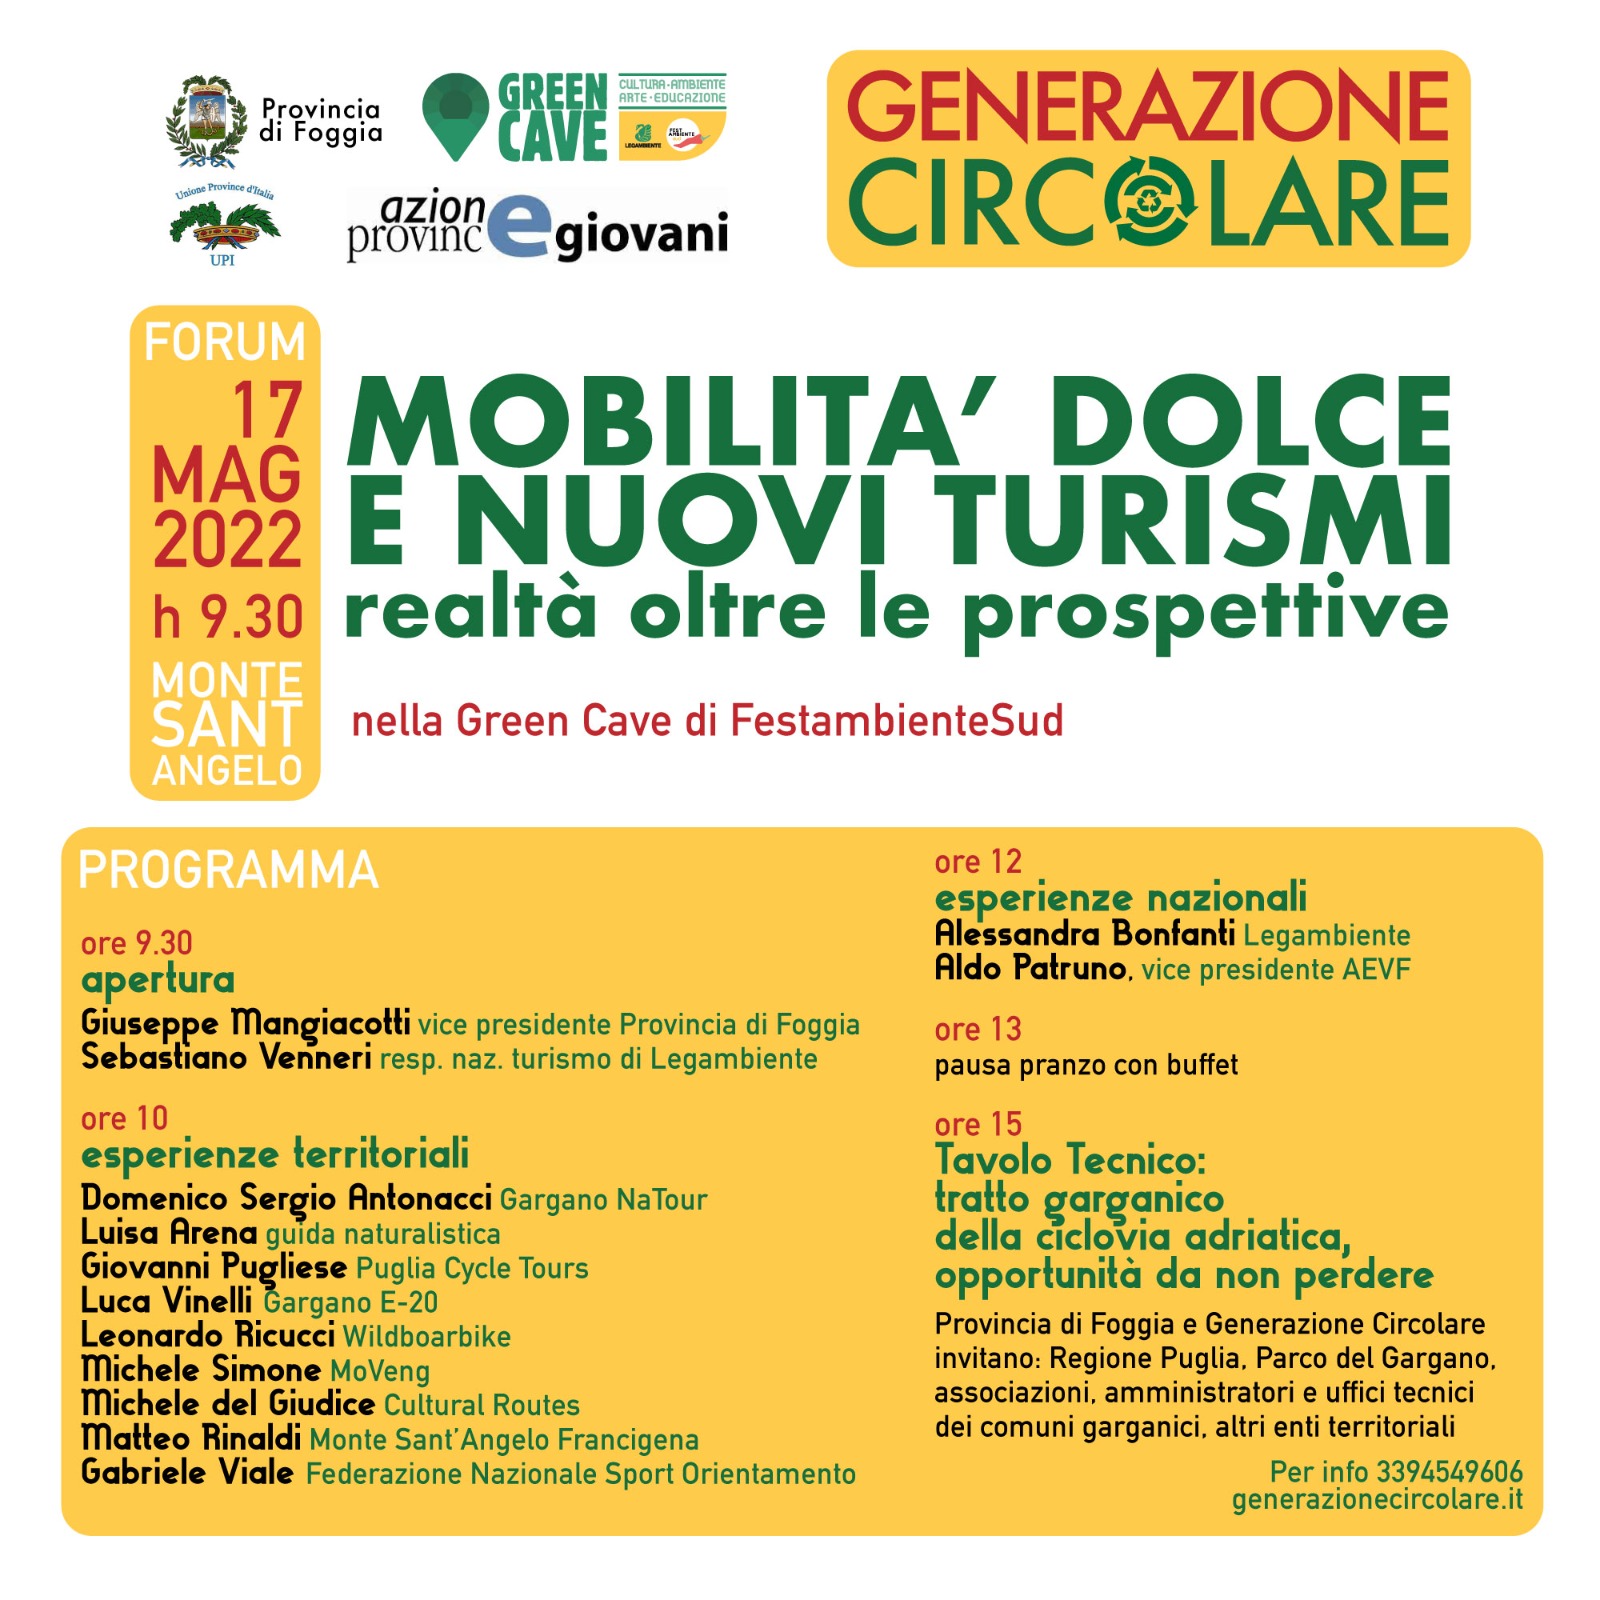 Mobilità dolce e nuovi turismi: realtà oltre le prospettive (17 maggio – Monte Sant’Angelo)